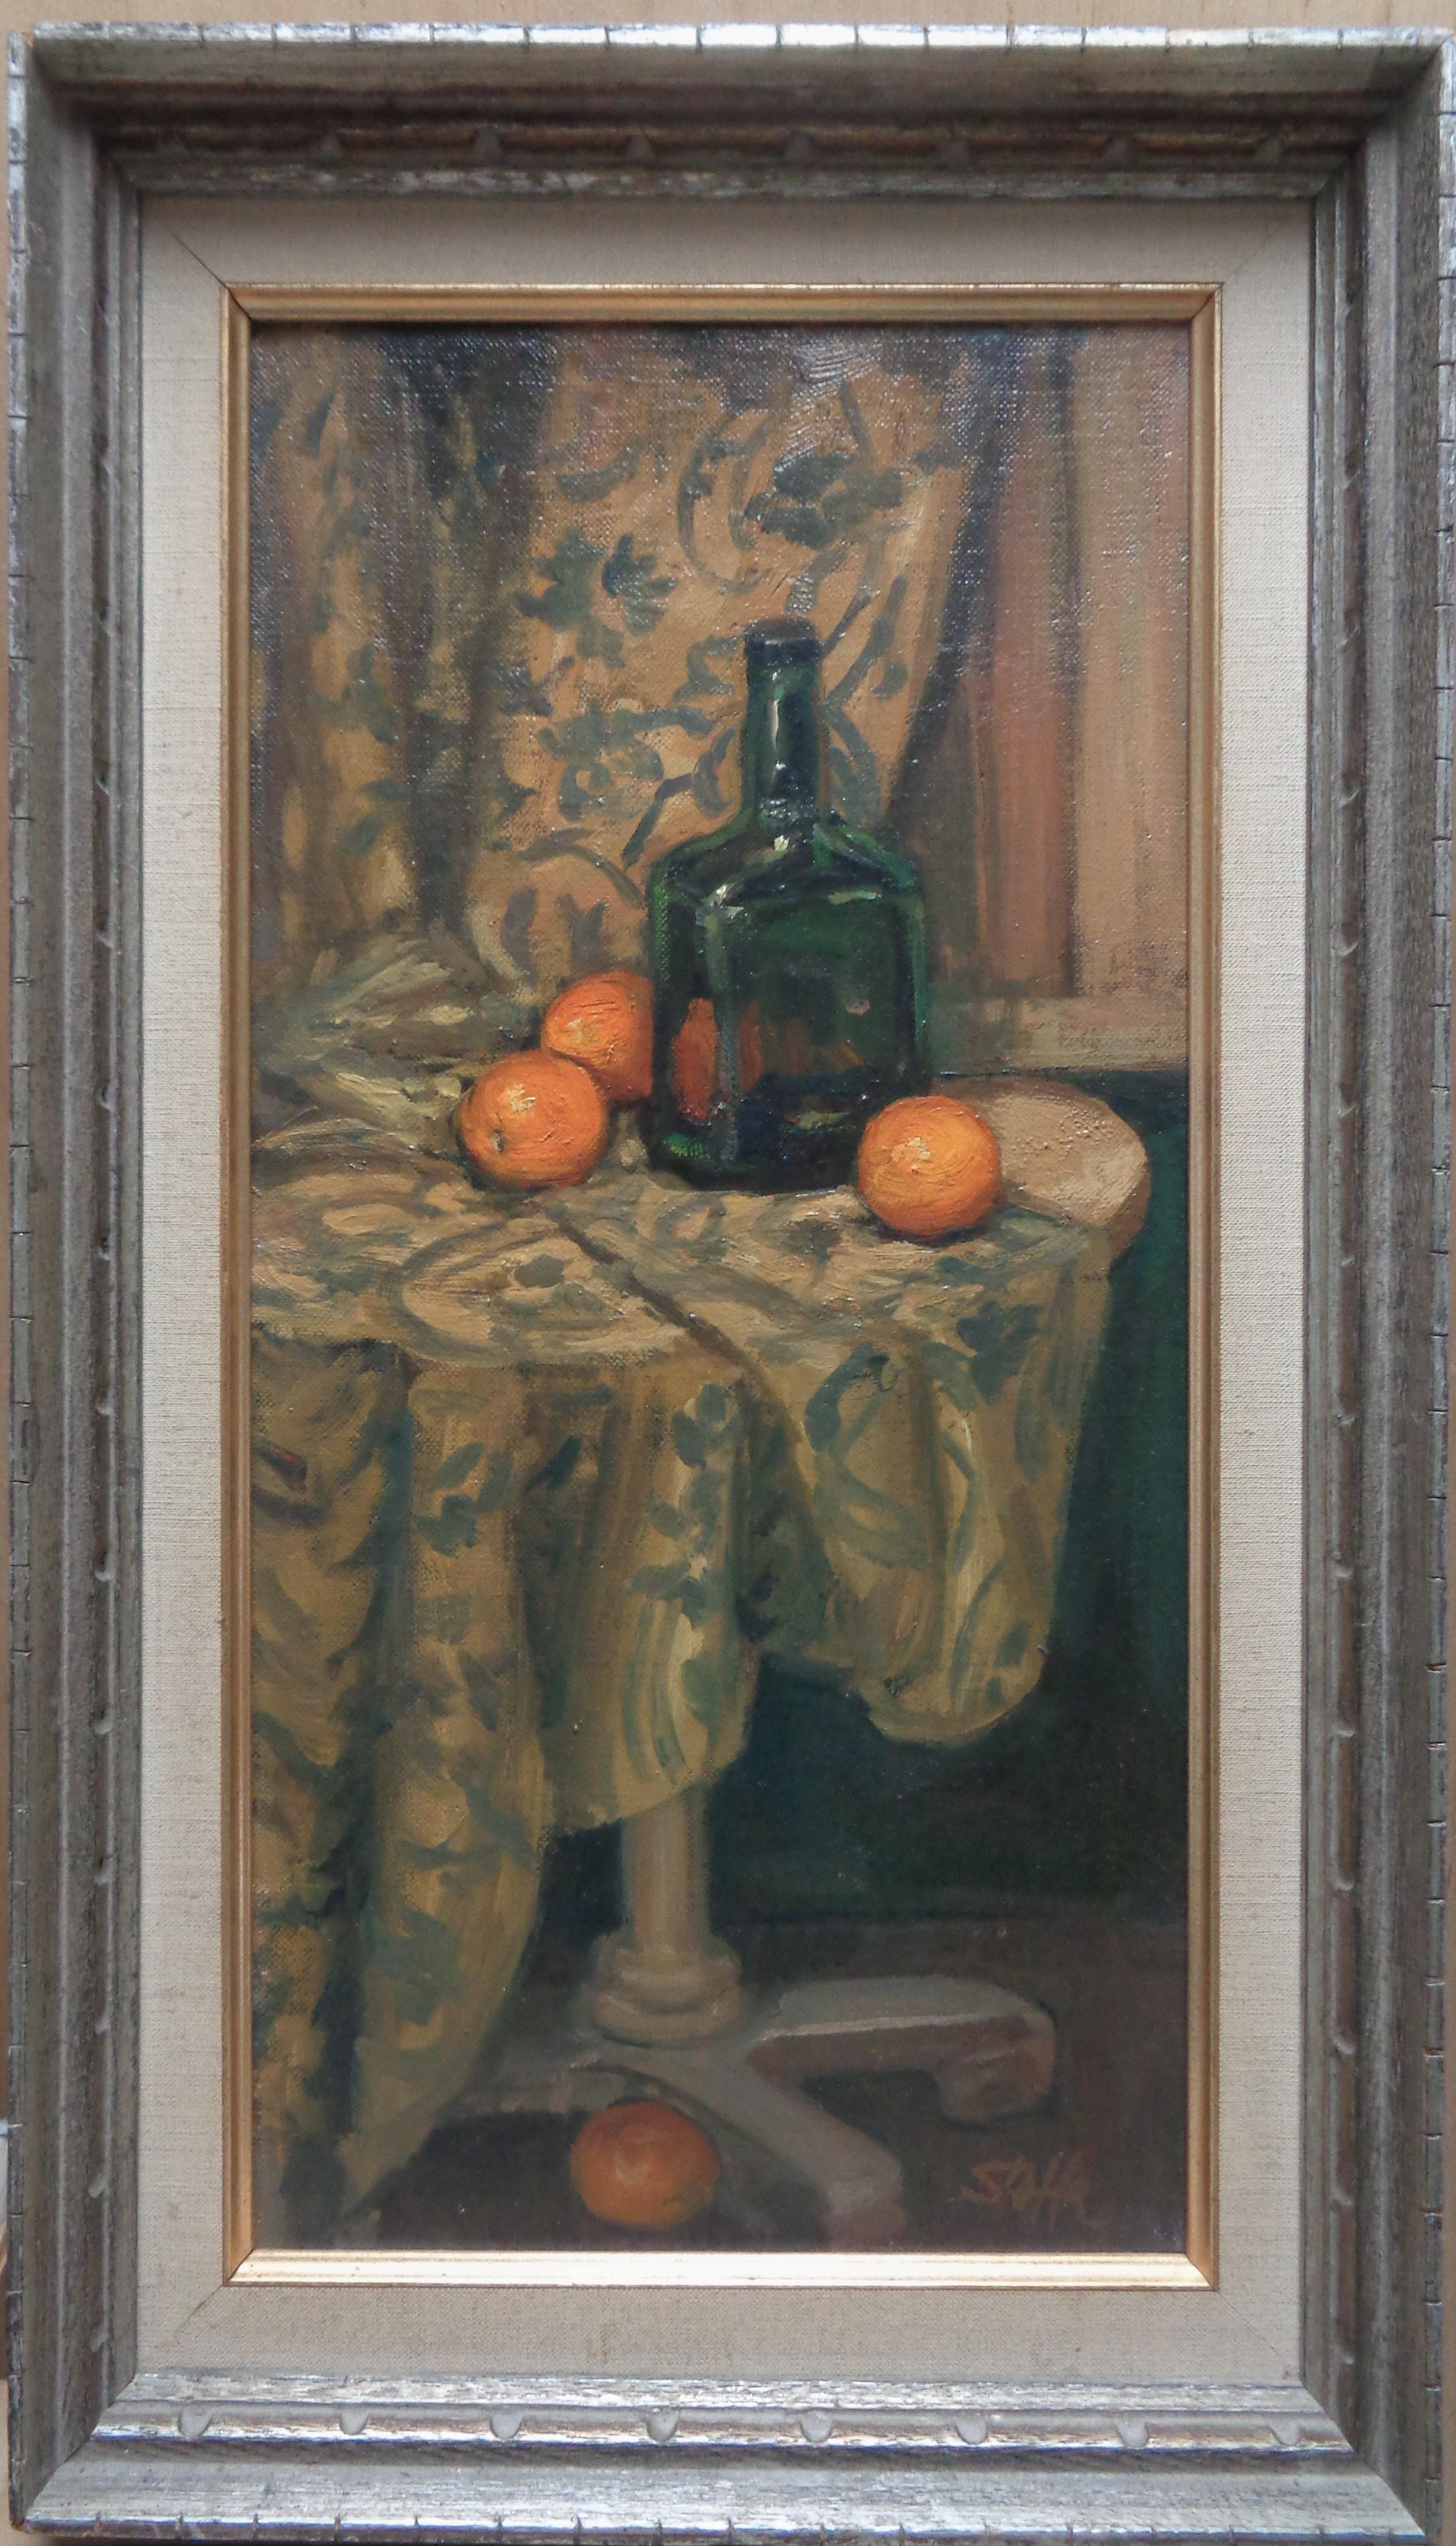 Michael Stoffa (Amerikaner, 1923-2001)  (Rockport, MA)
"Immer noch mit Orangen leben"
Öl auf Platte, rechts unten signiert
Malerei:  ungefähr 8" x 16"
Das Bild muss gereinigt werden und ist nicht so hell  und klar, wie die Bilder zeigen.